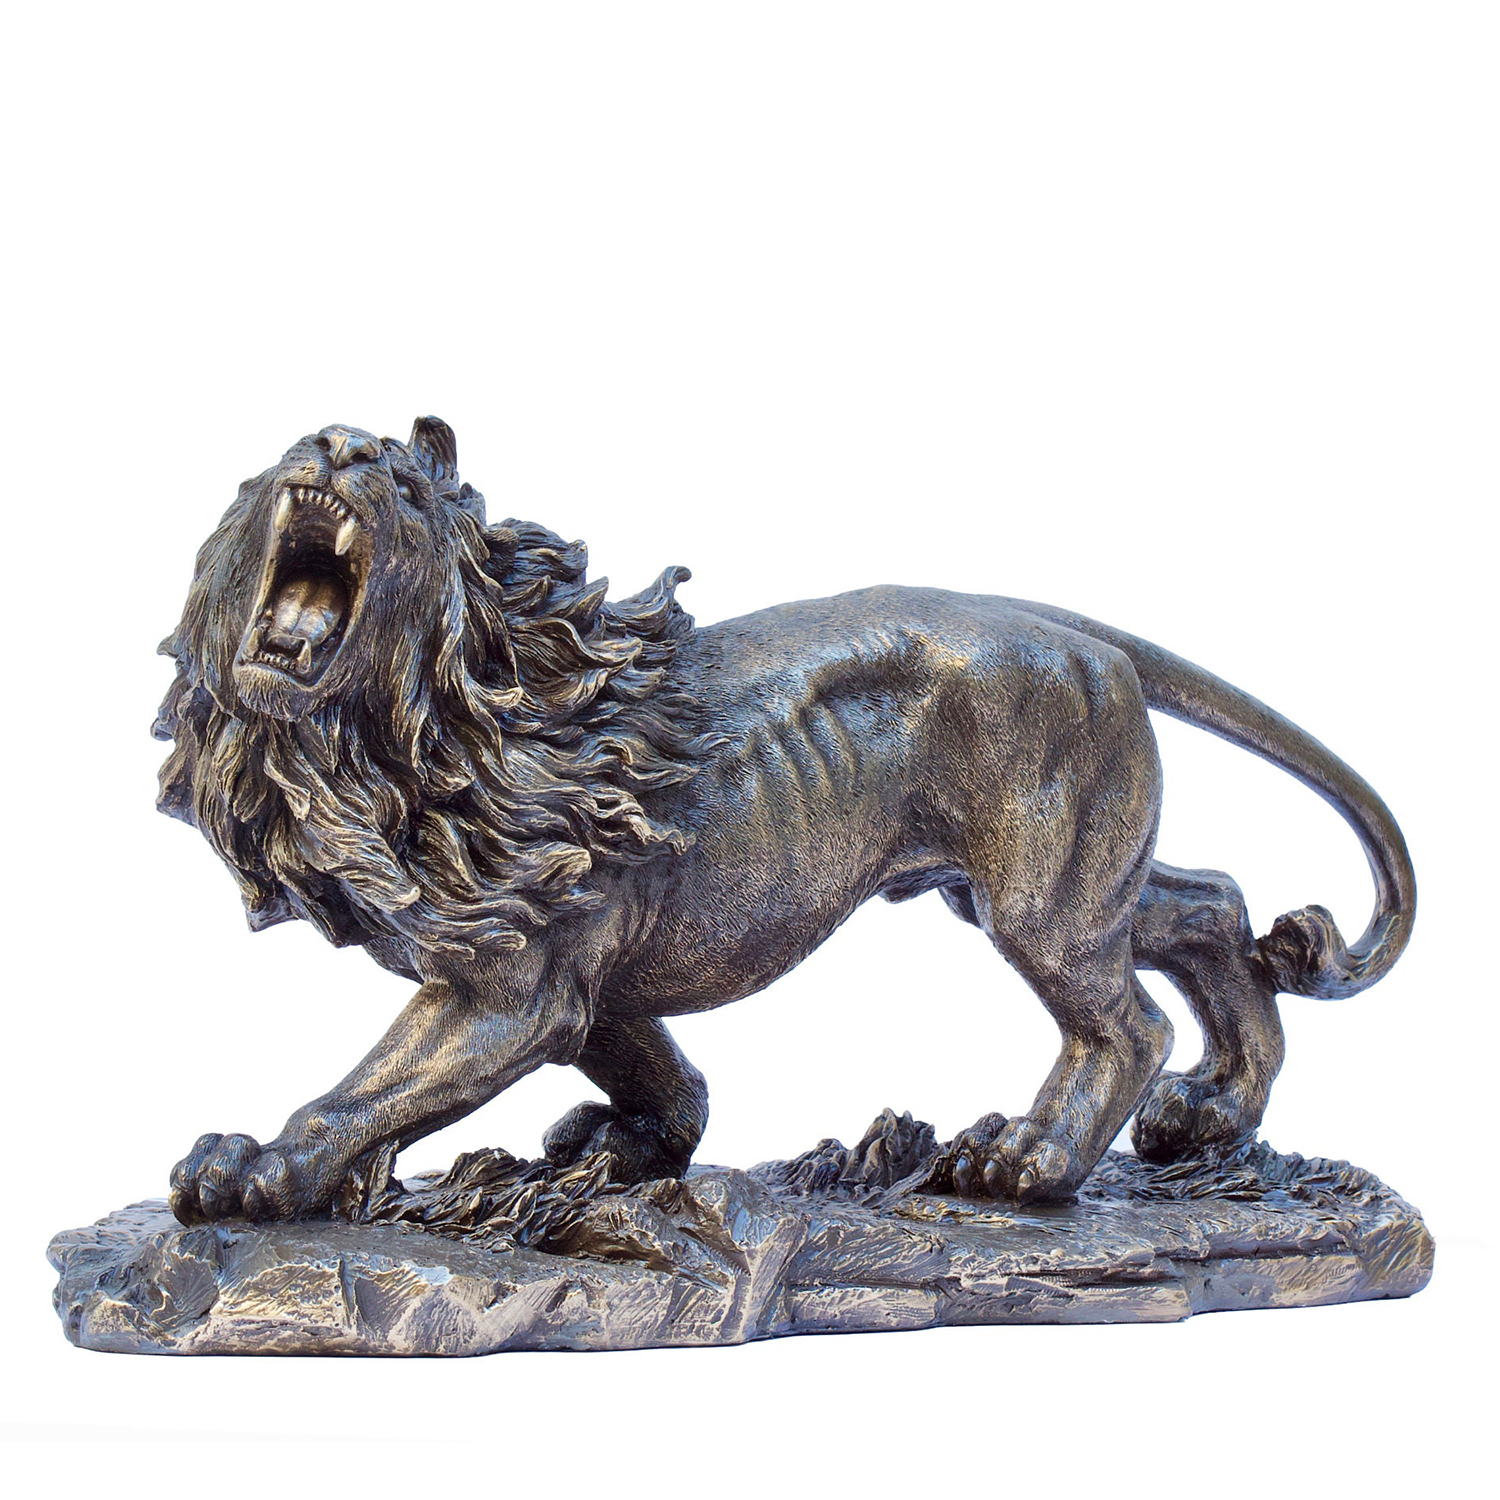 Lion Brass Statue